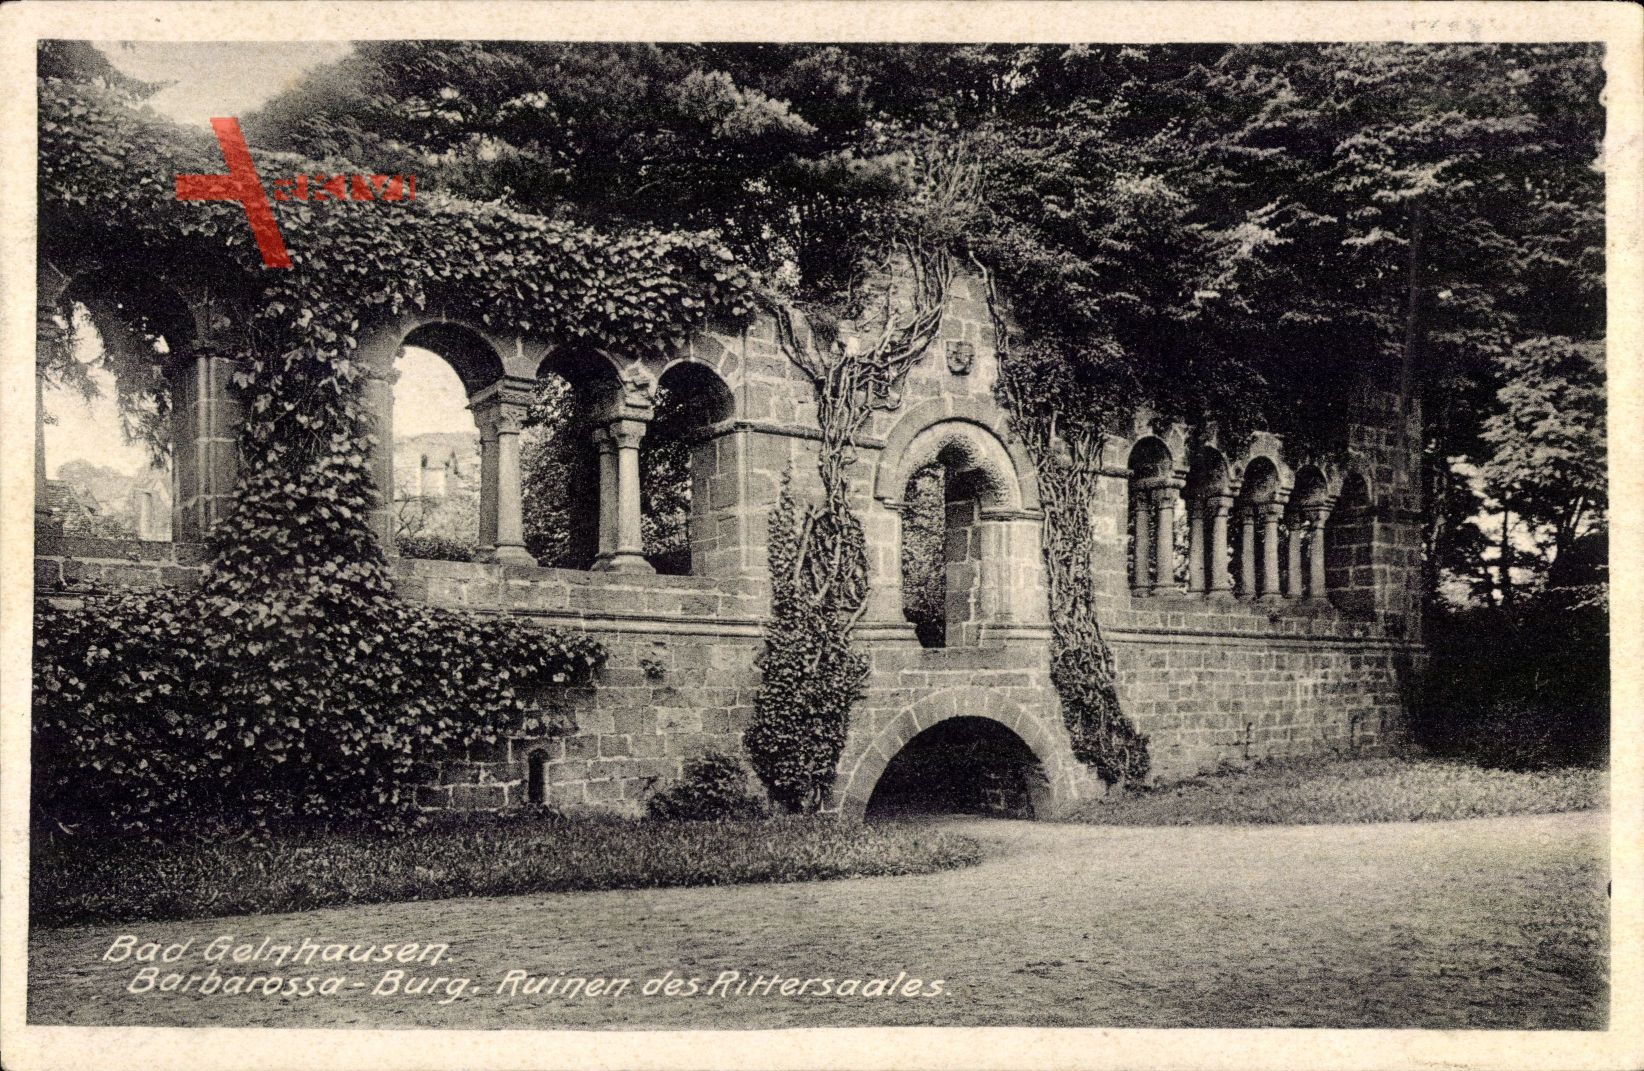 Gelnhausen Hessen, Barbarossaburg, Ruinen des Rittersaales